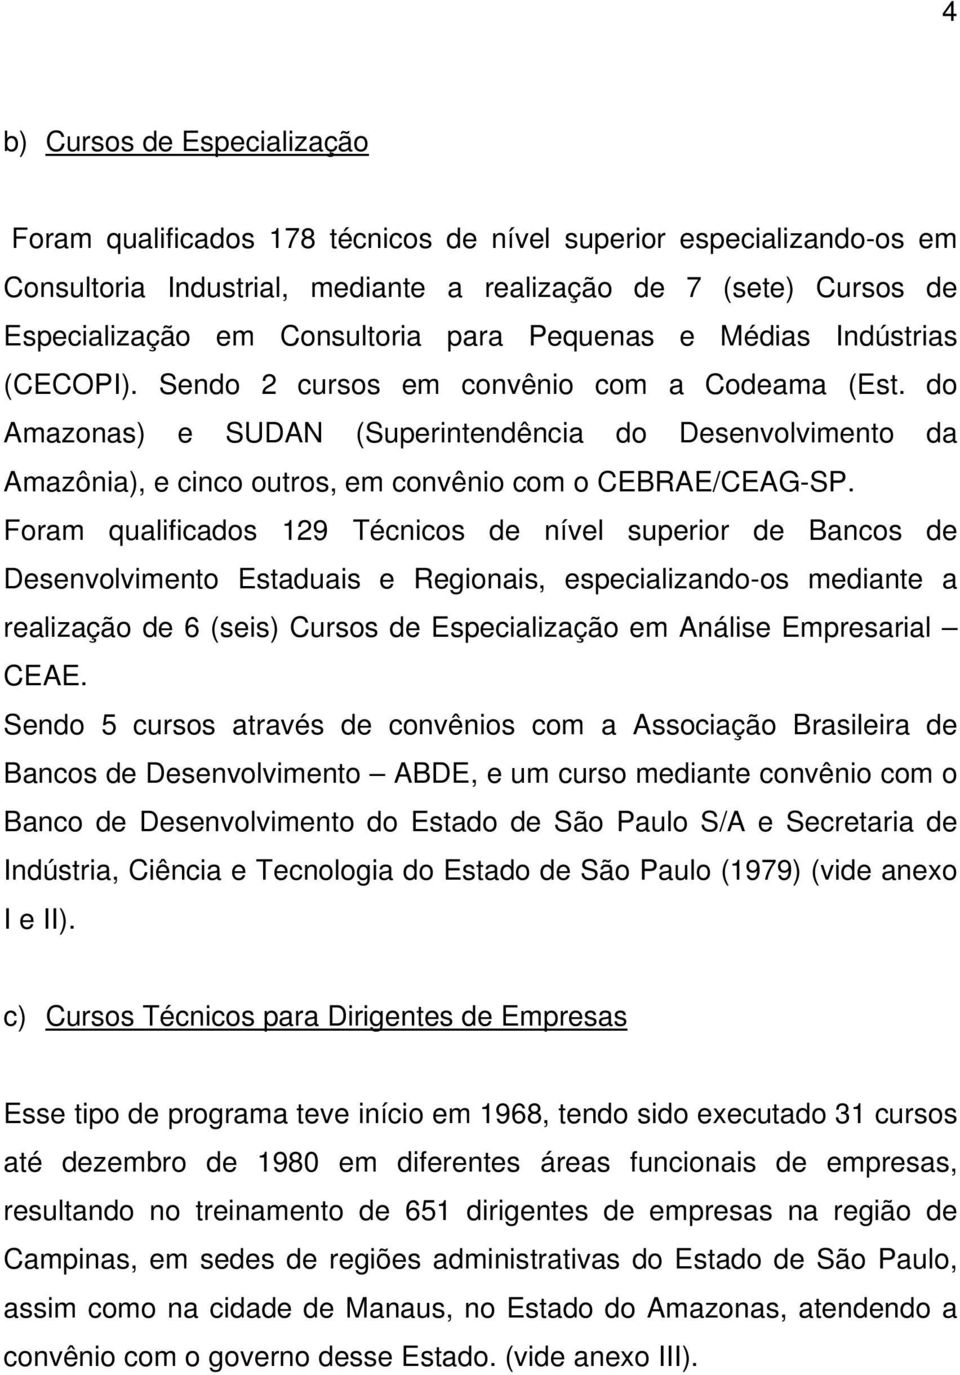 do Amazonas) e SUDAN (Superintendência do Desenvolvimento da Amazônia), e cinco outros, em convênio com o CEBRAE/CEAG-SP.